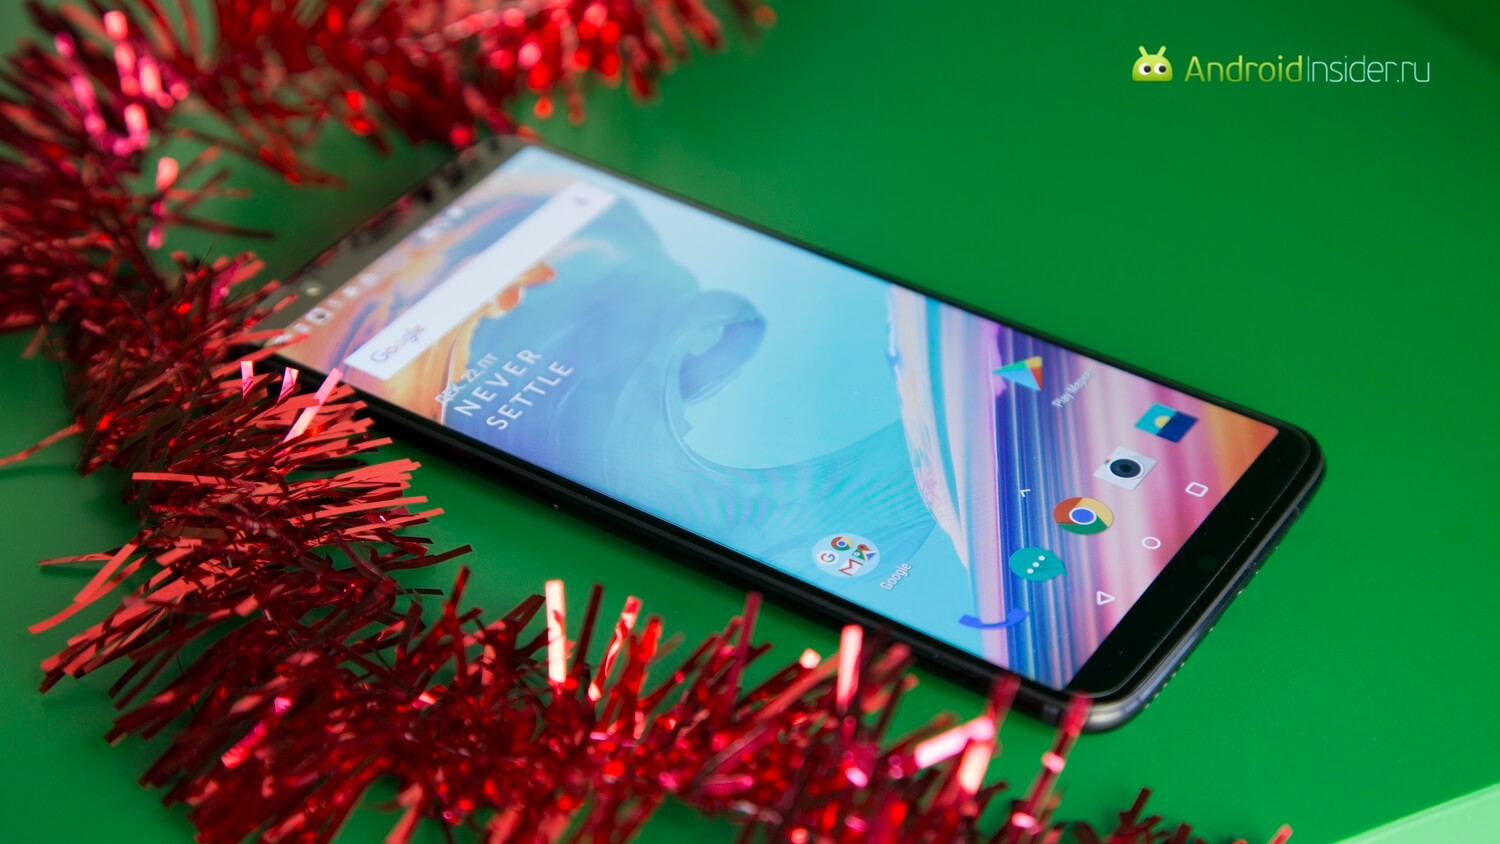 Видеообзор: OnePlus 5T — почти отличный смартфон! А конкуренты кто? Фото.